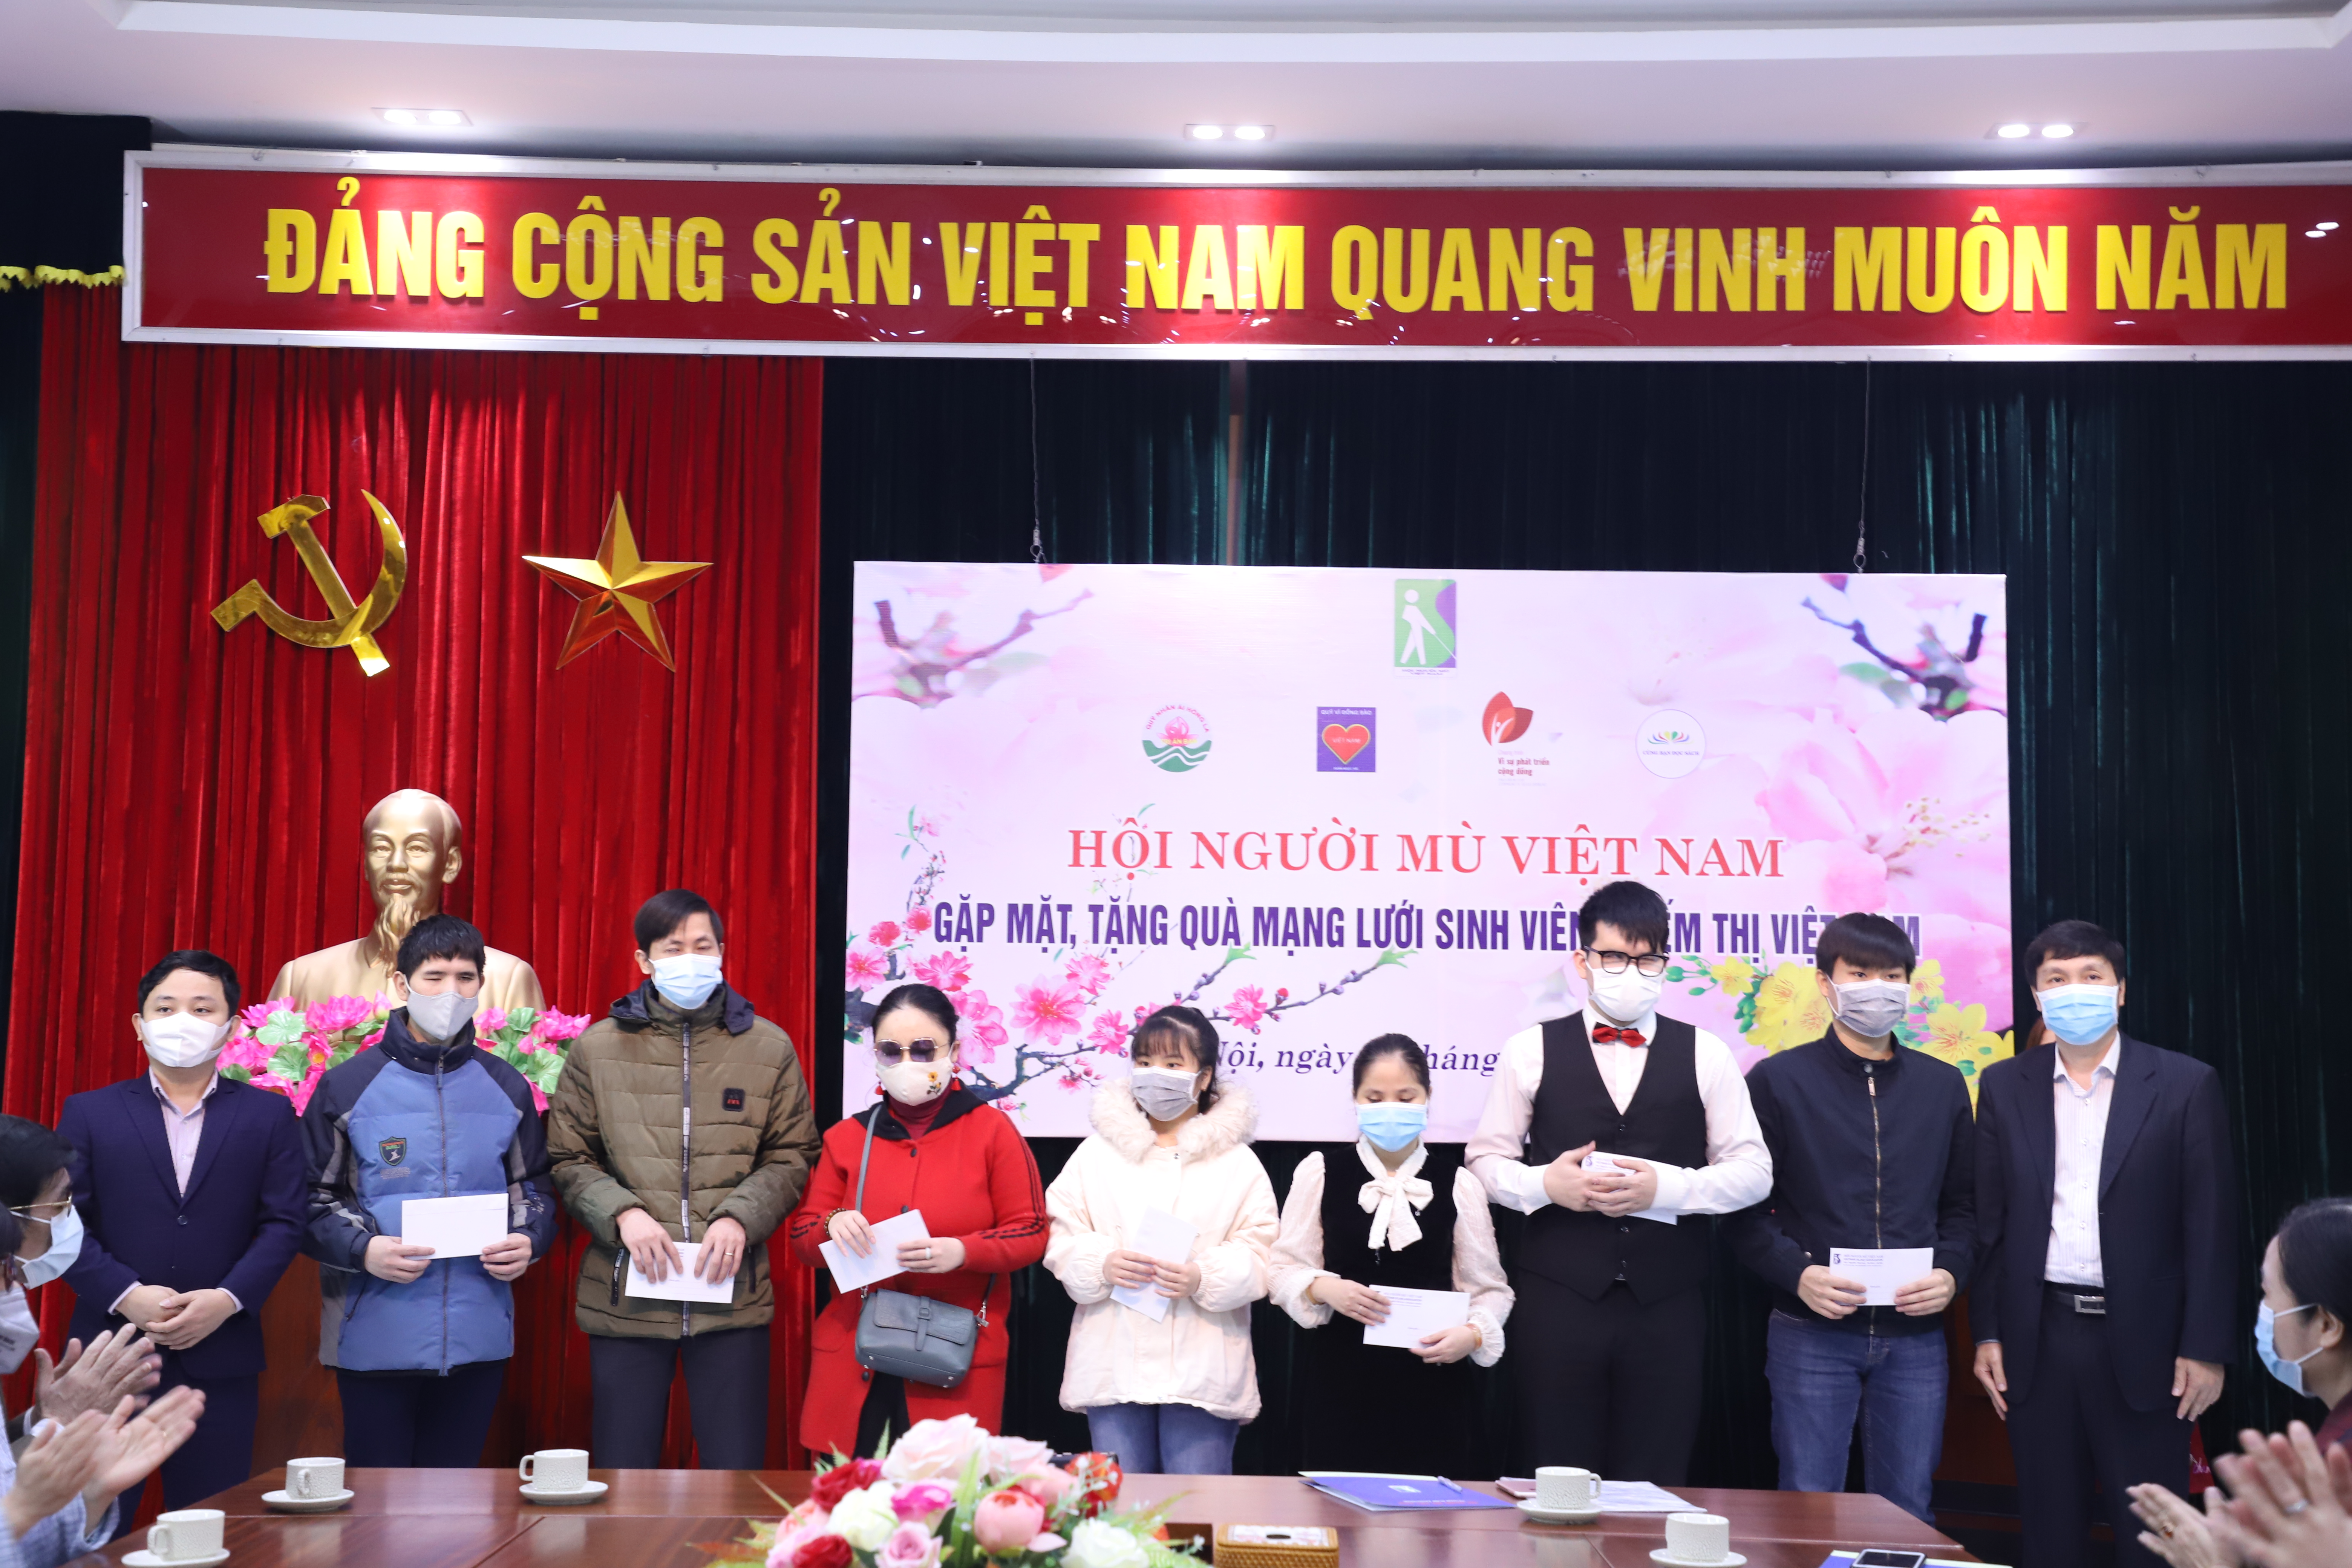 Hình ảnh: Gặp mặt, tặng quà mạng lưới sinh viên khiếm thị Việt Nam